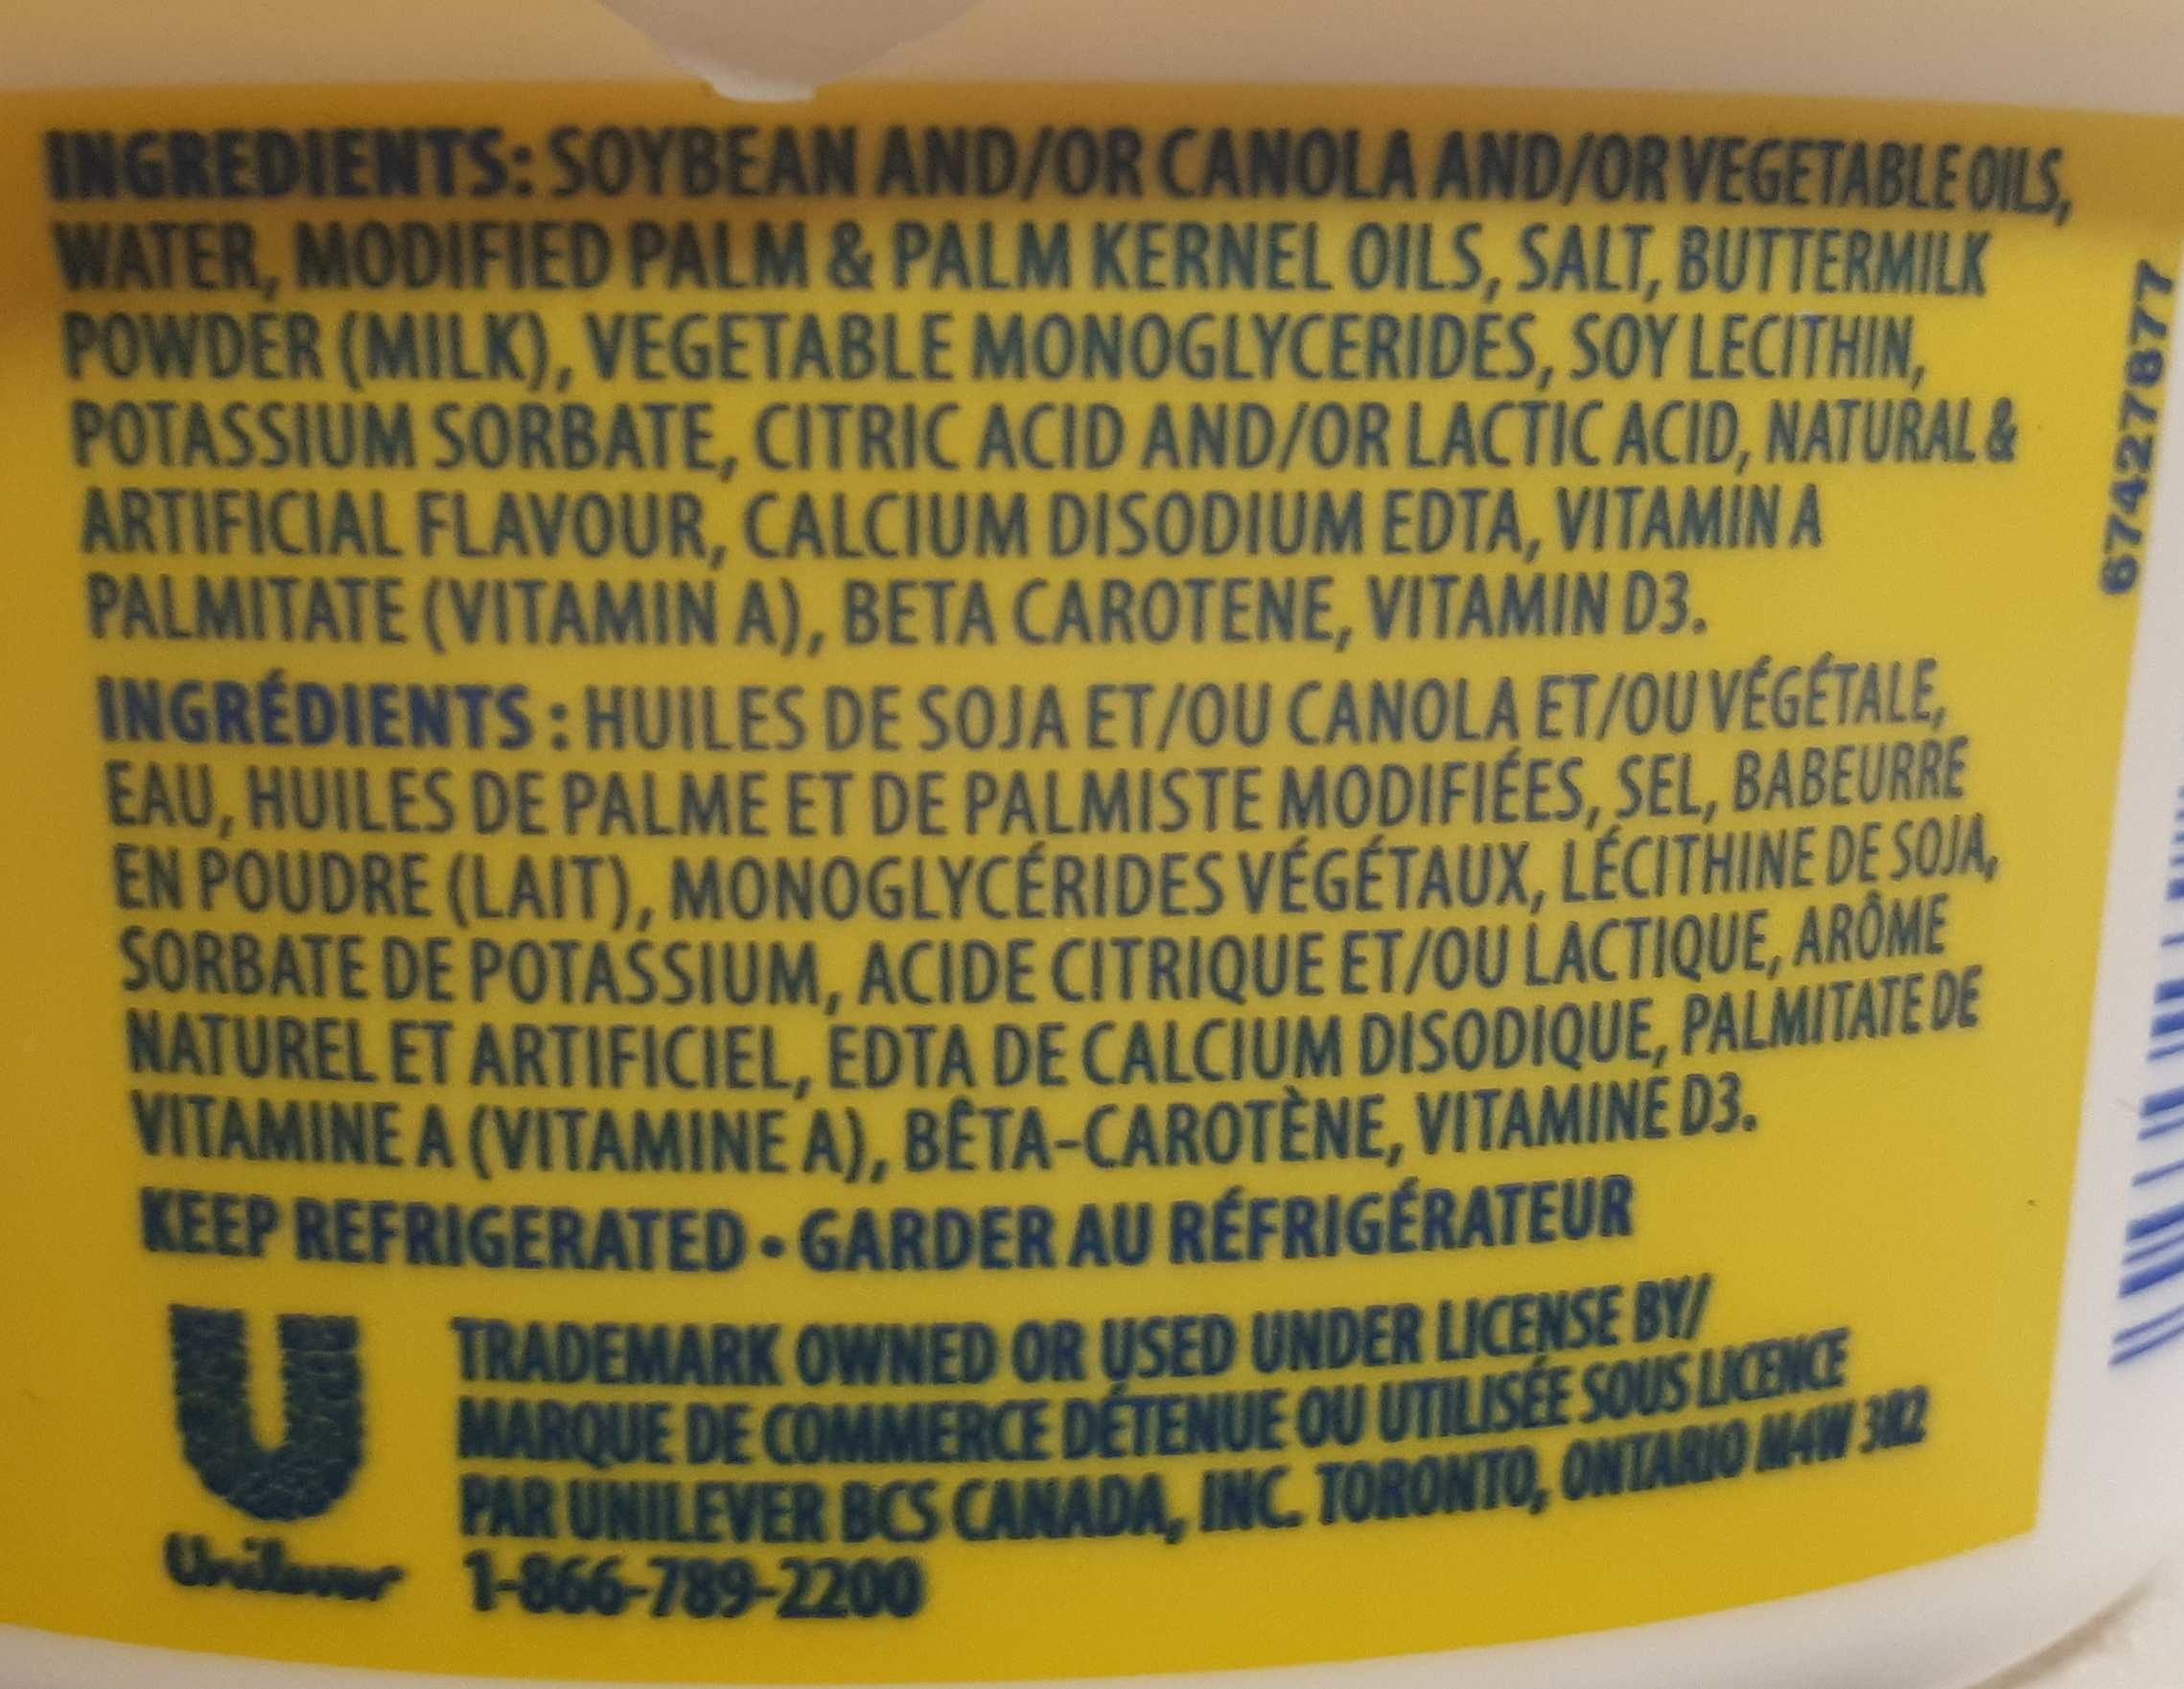 Margarine originale - Ingredients - en